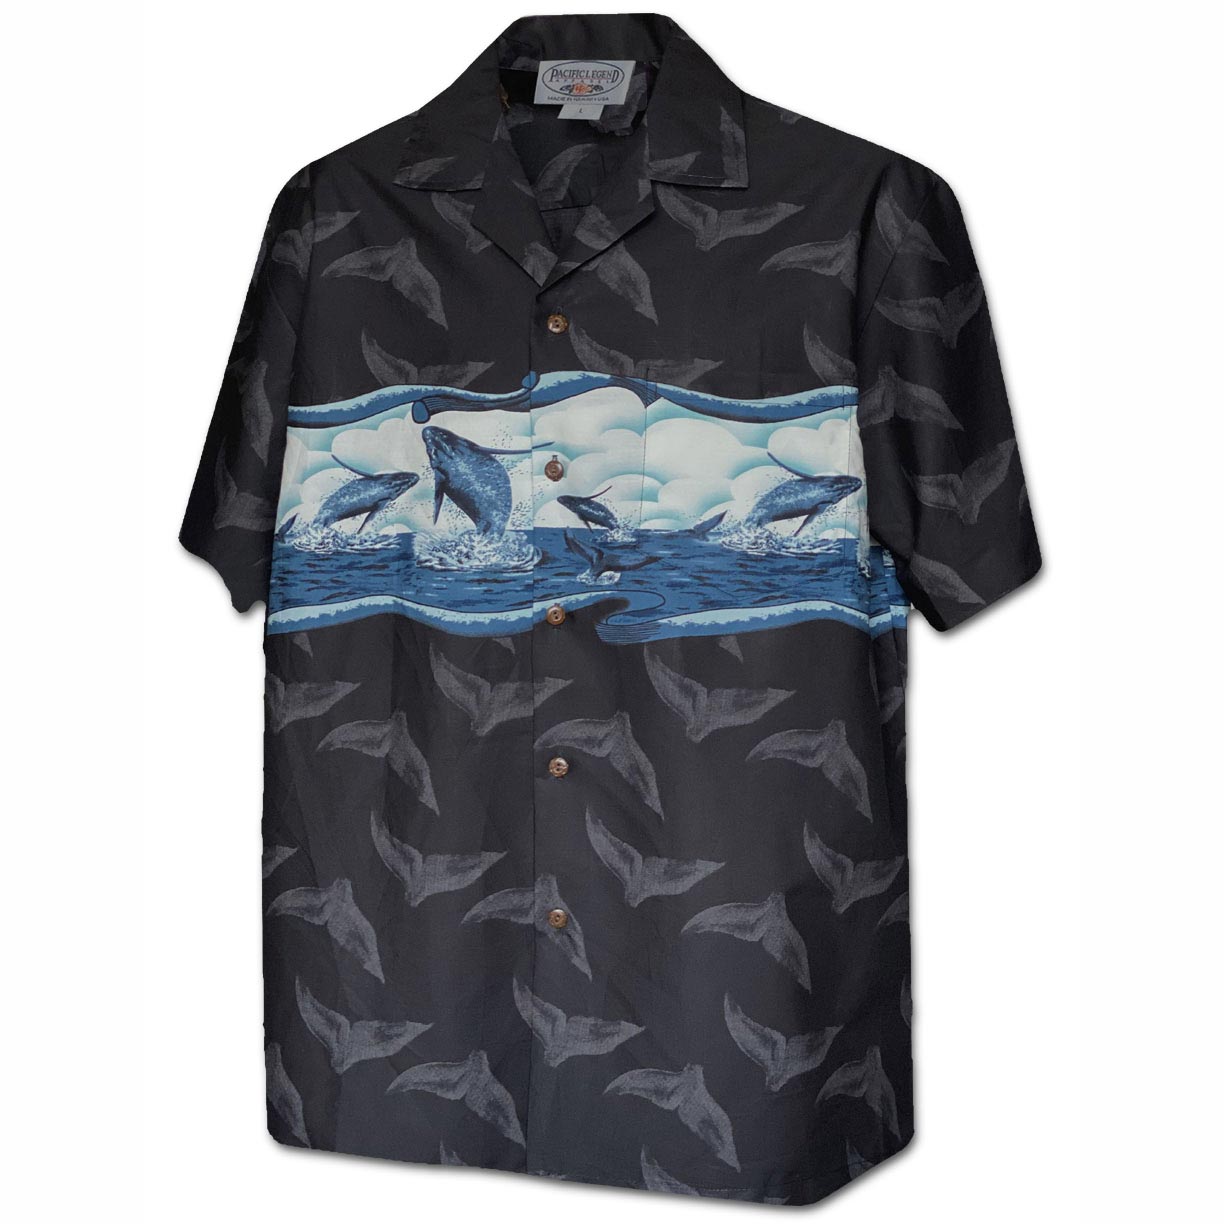 Jumping Whales Black Hawaiian Shirt